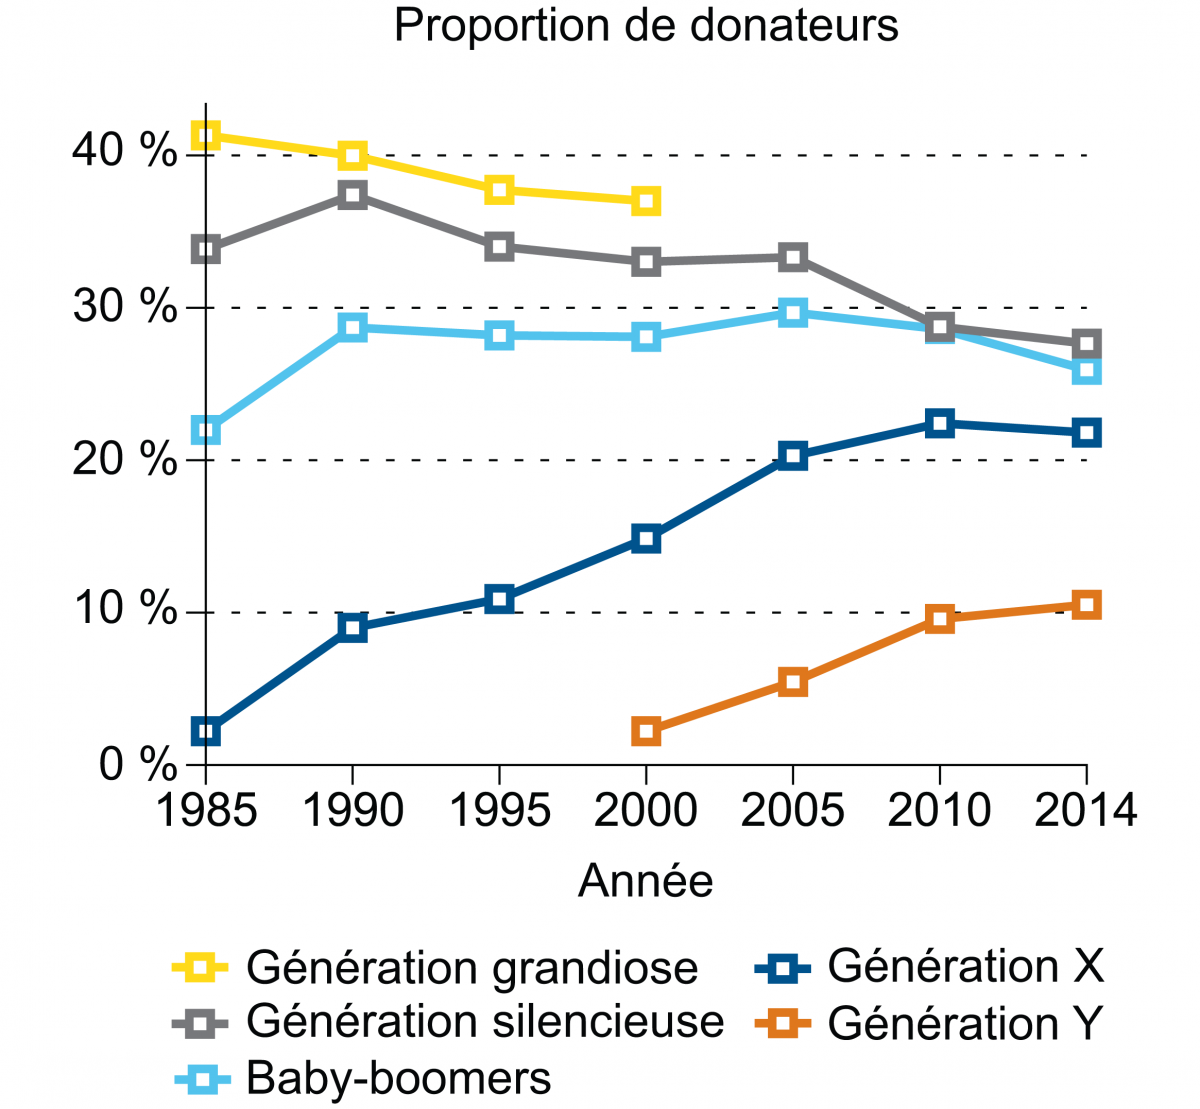  Proportion des dons selon la génération.